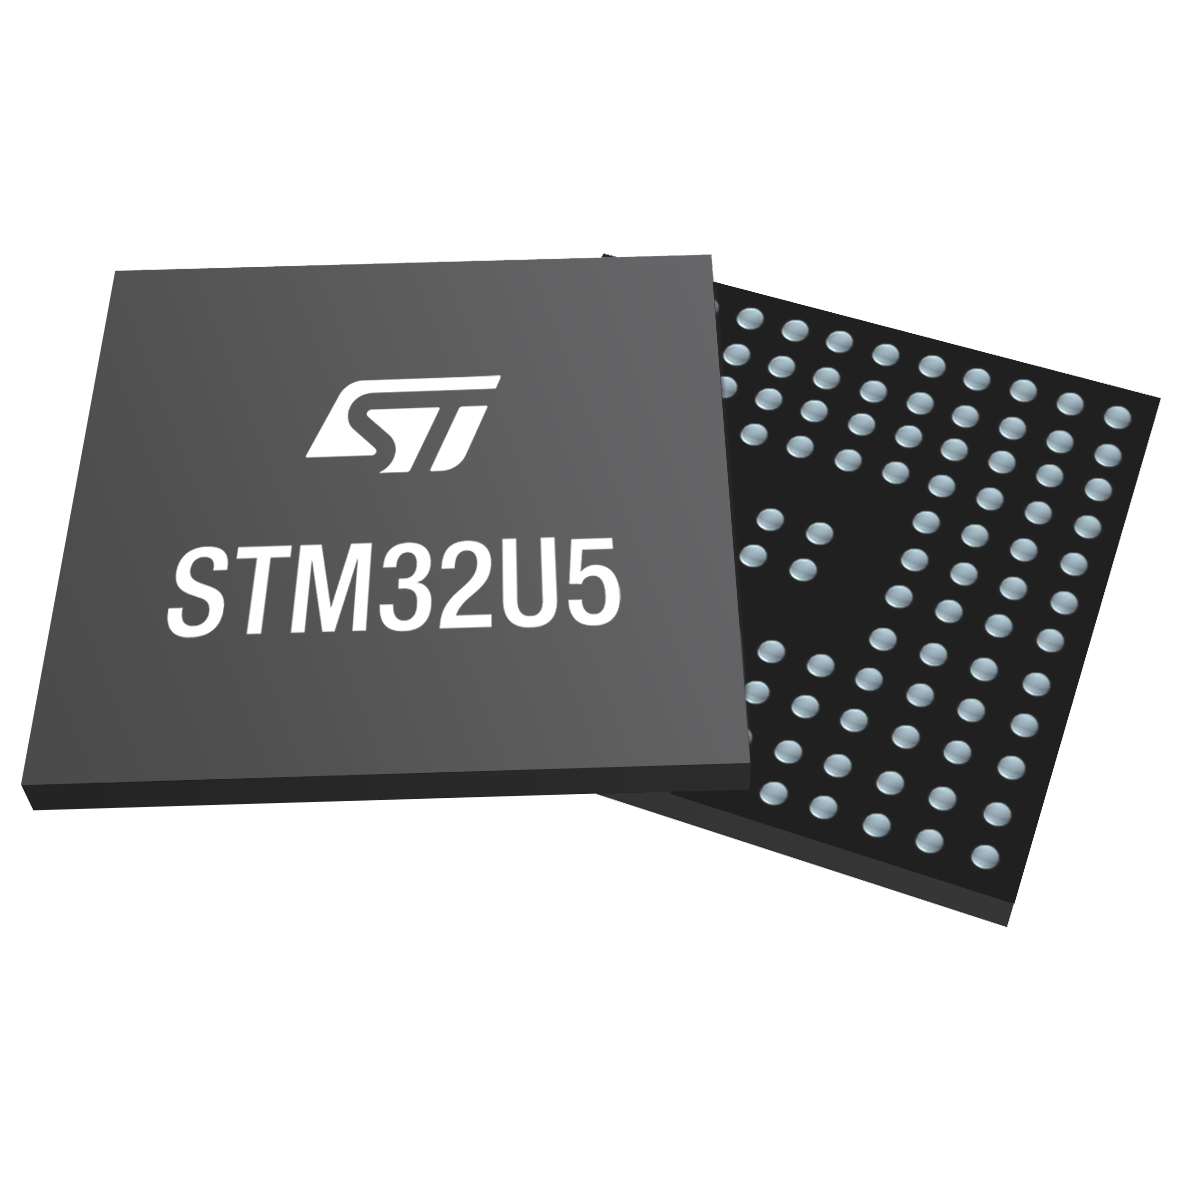 STM32U5